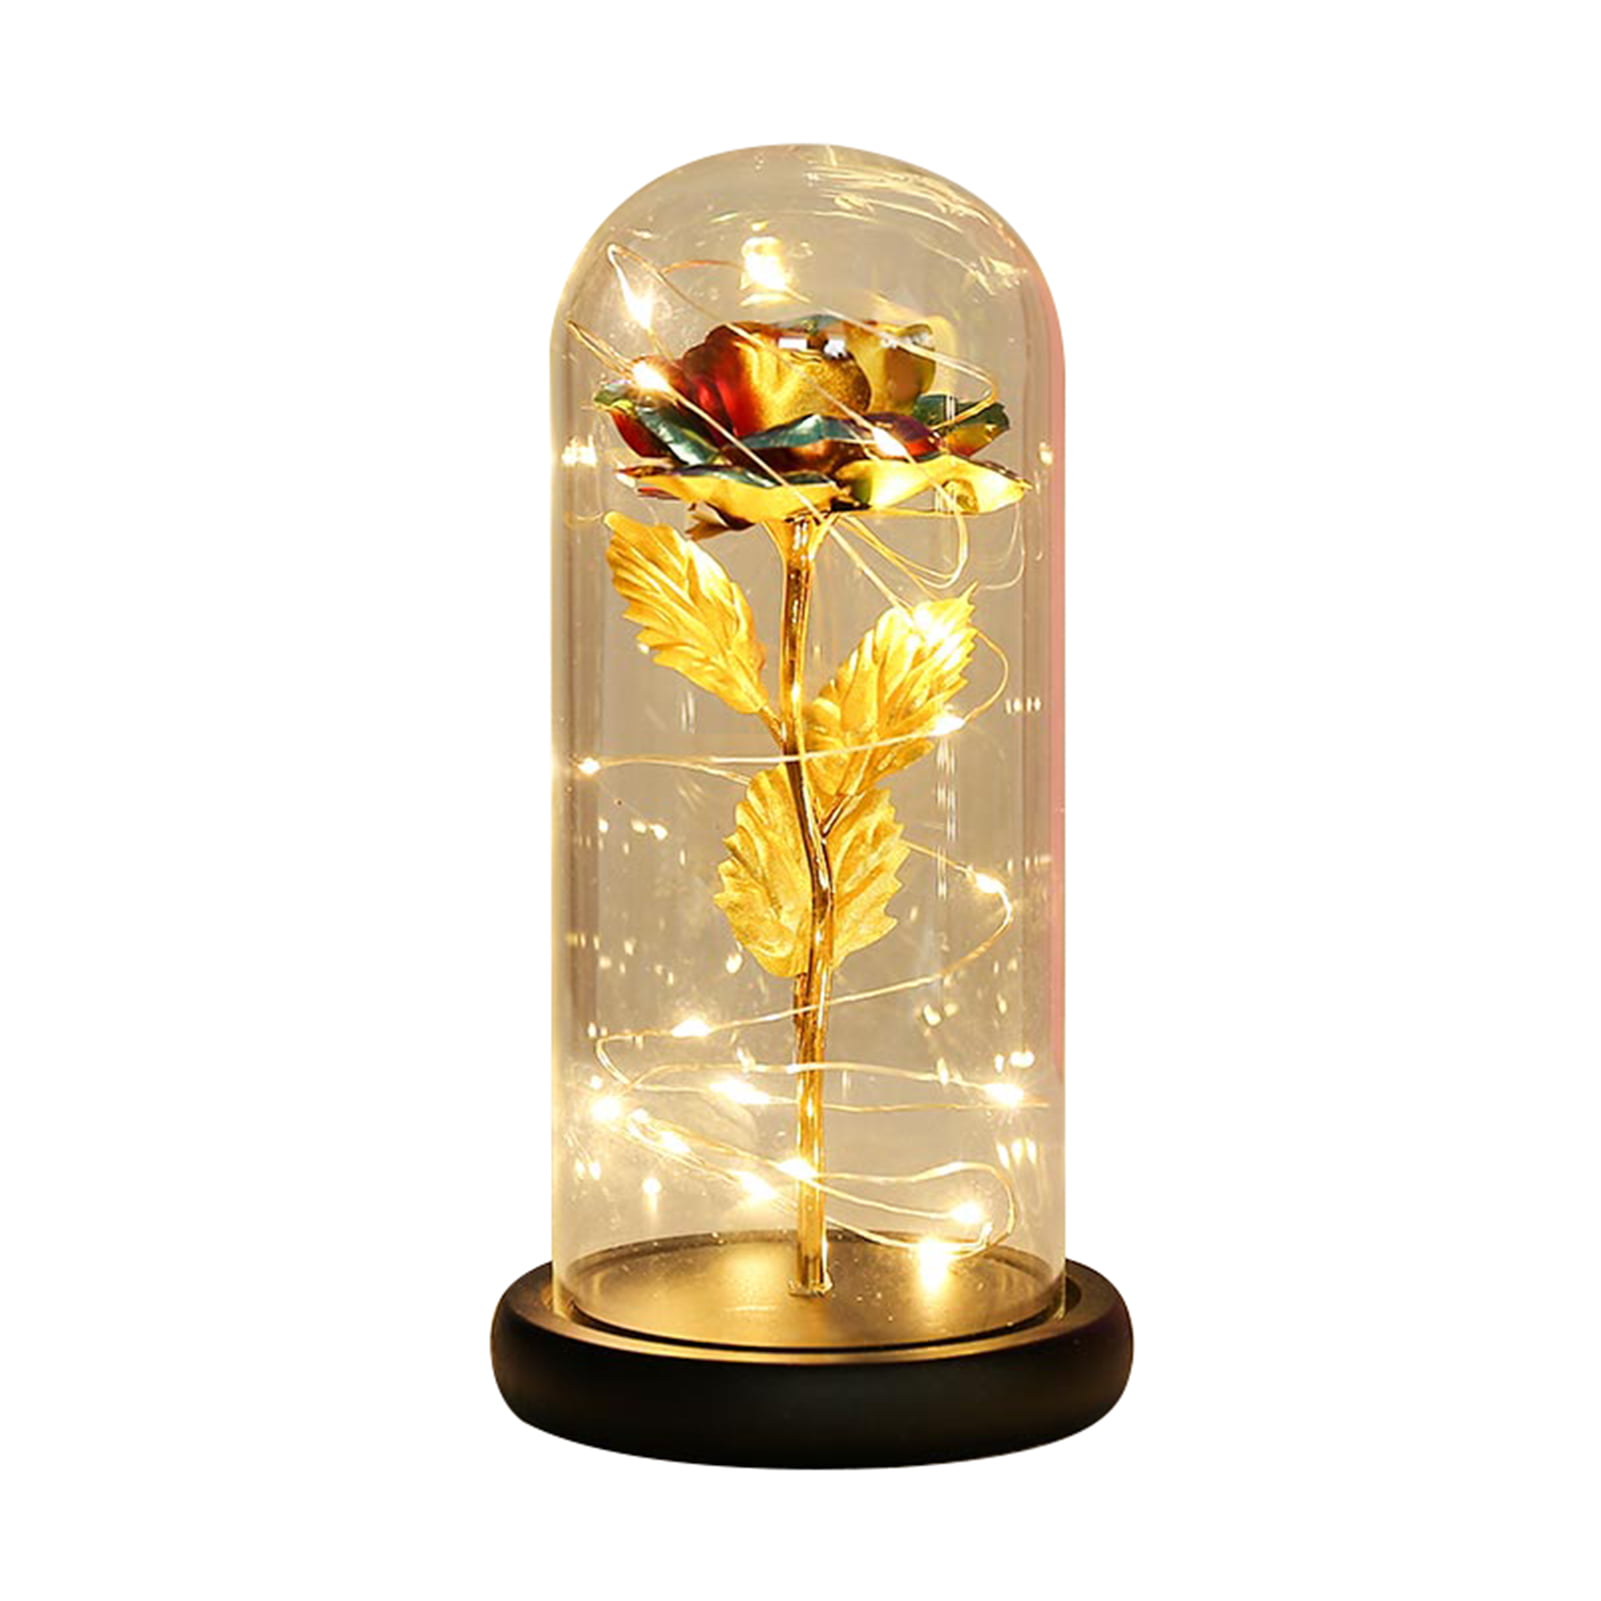 Romantic Rose Flower Night Light 20 LED Glass Bottle Lamp for Valentine's Day 